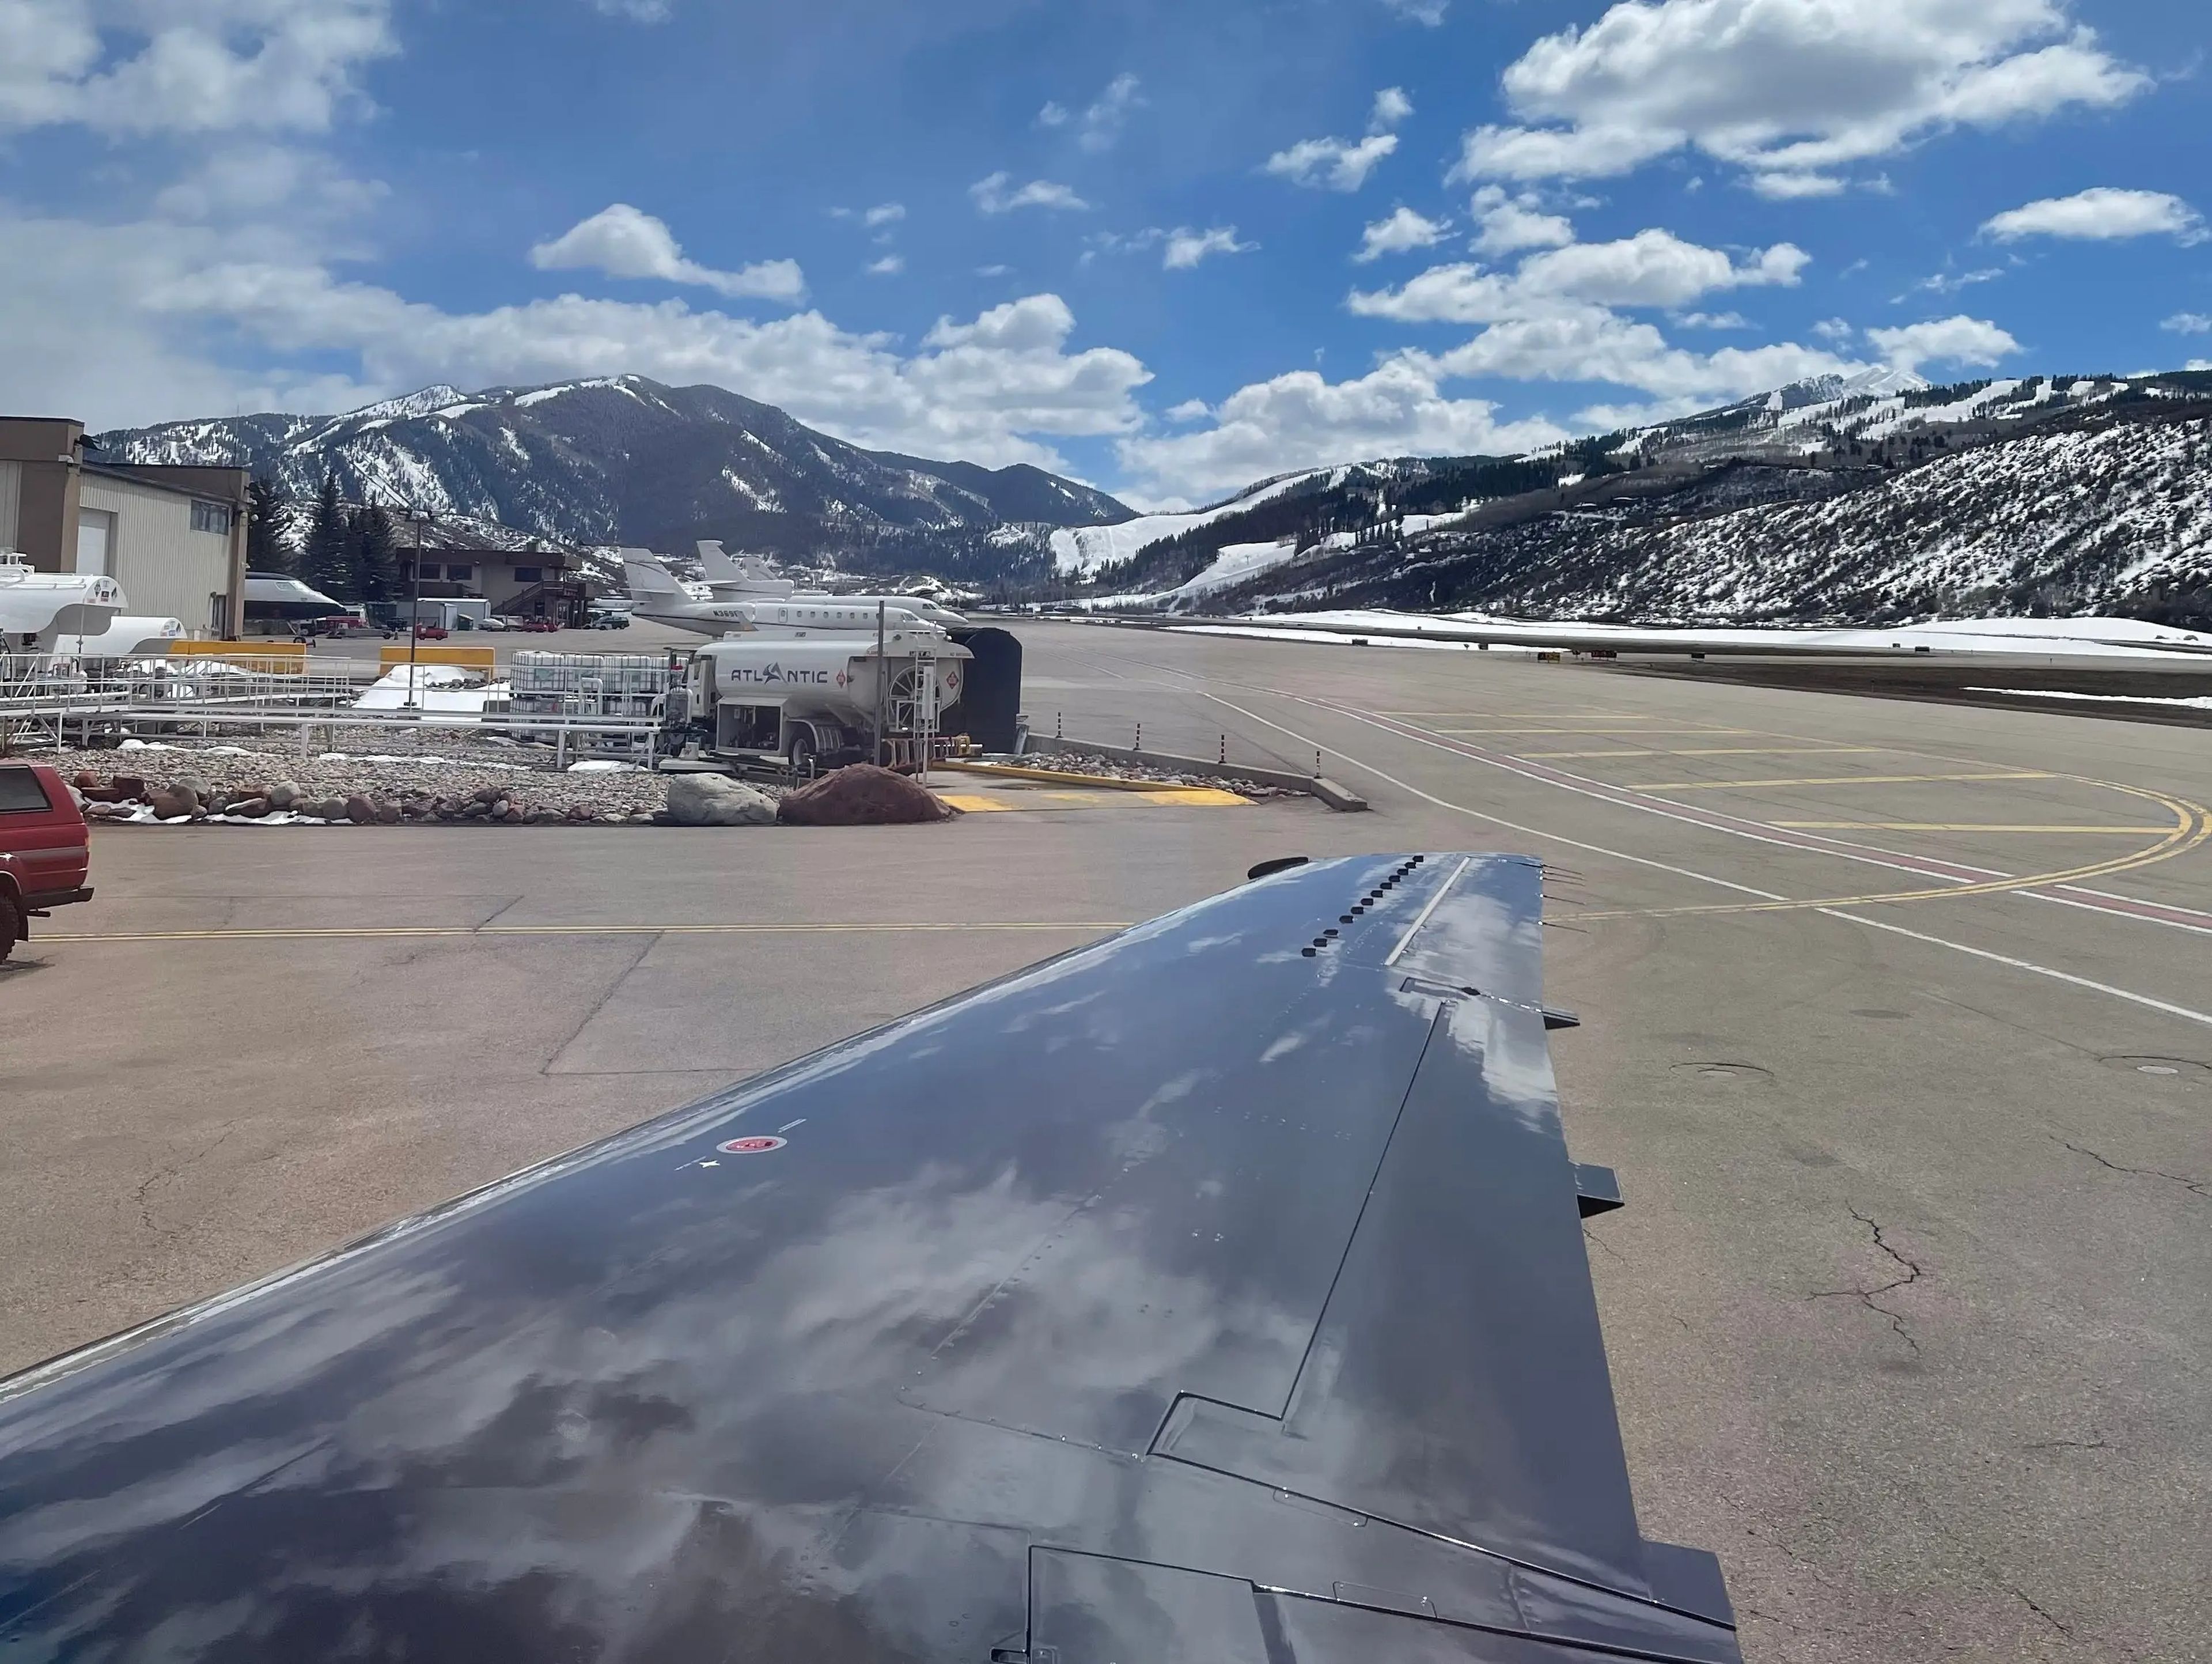 La vista desde el avión en Aspen.